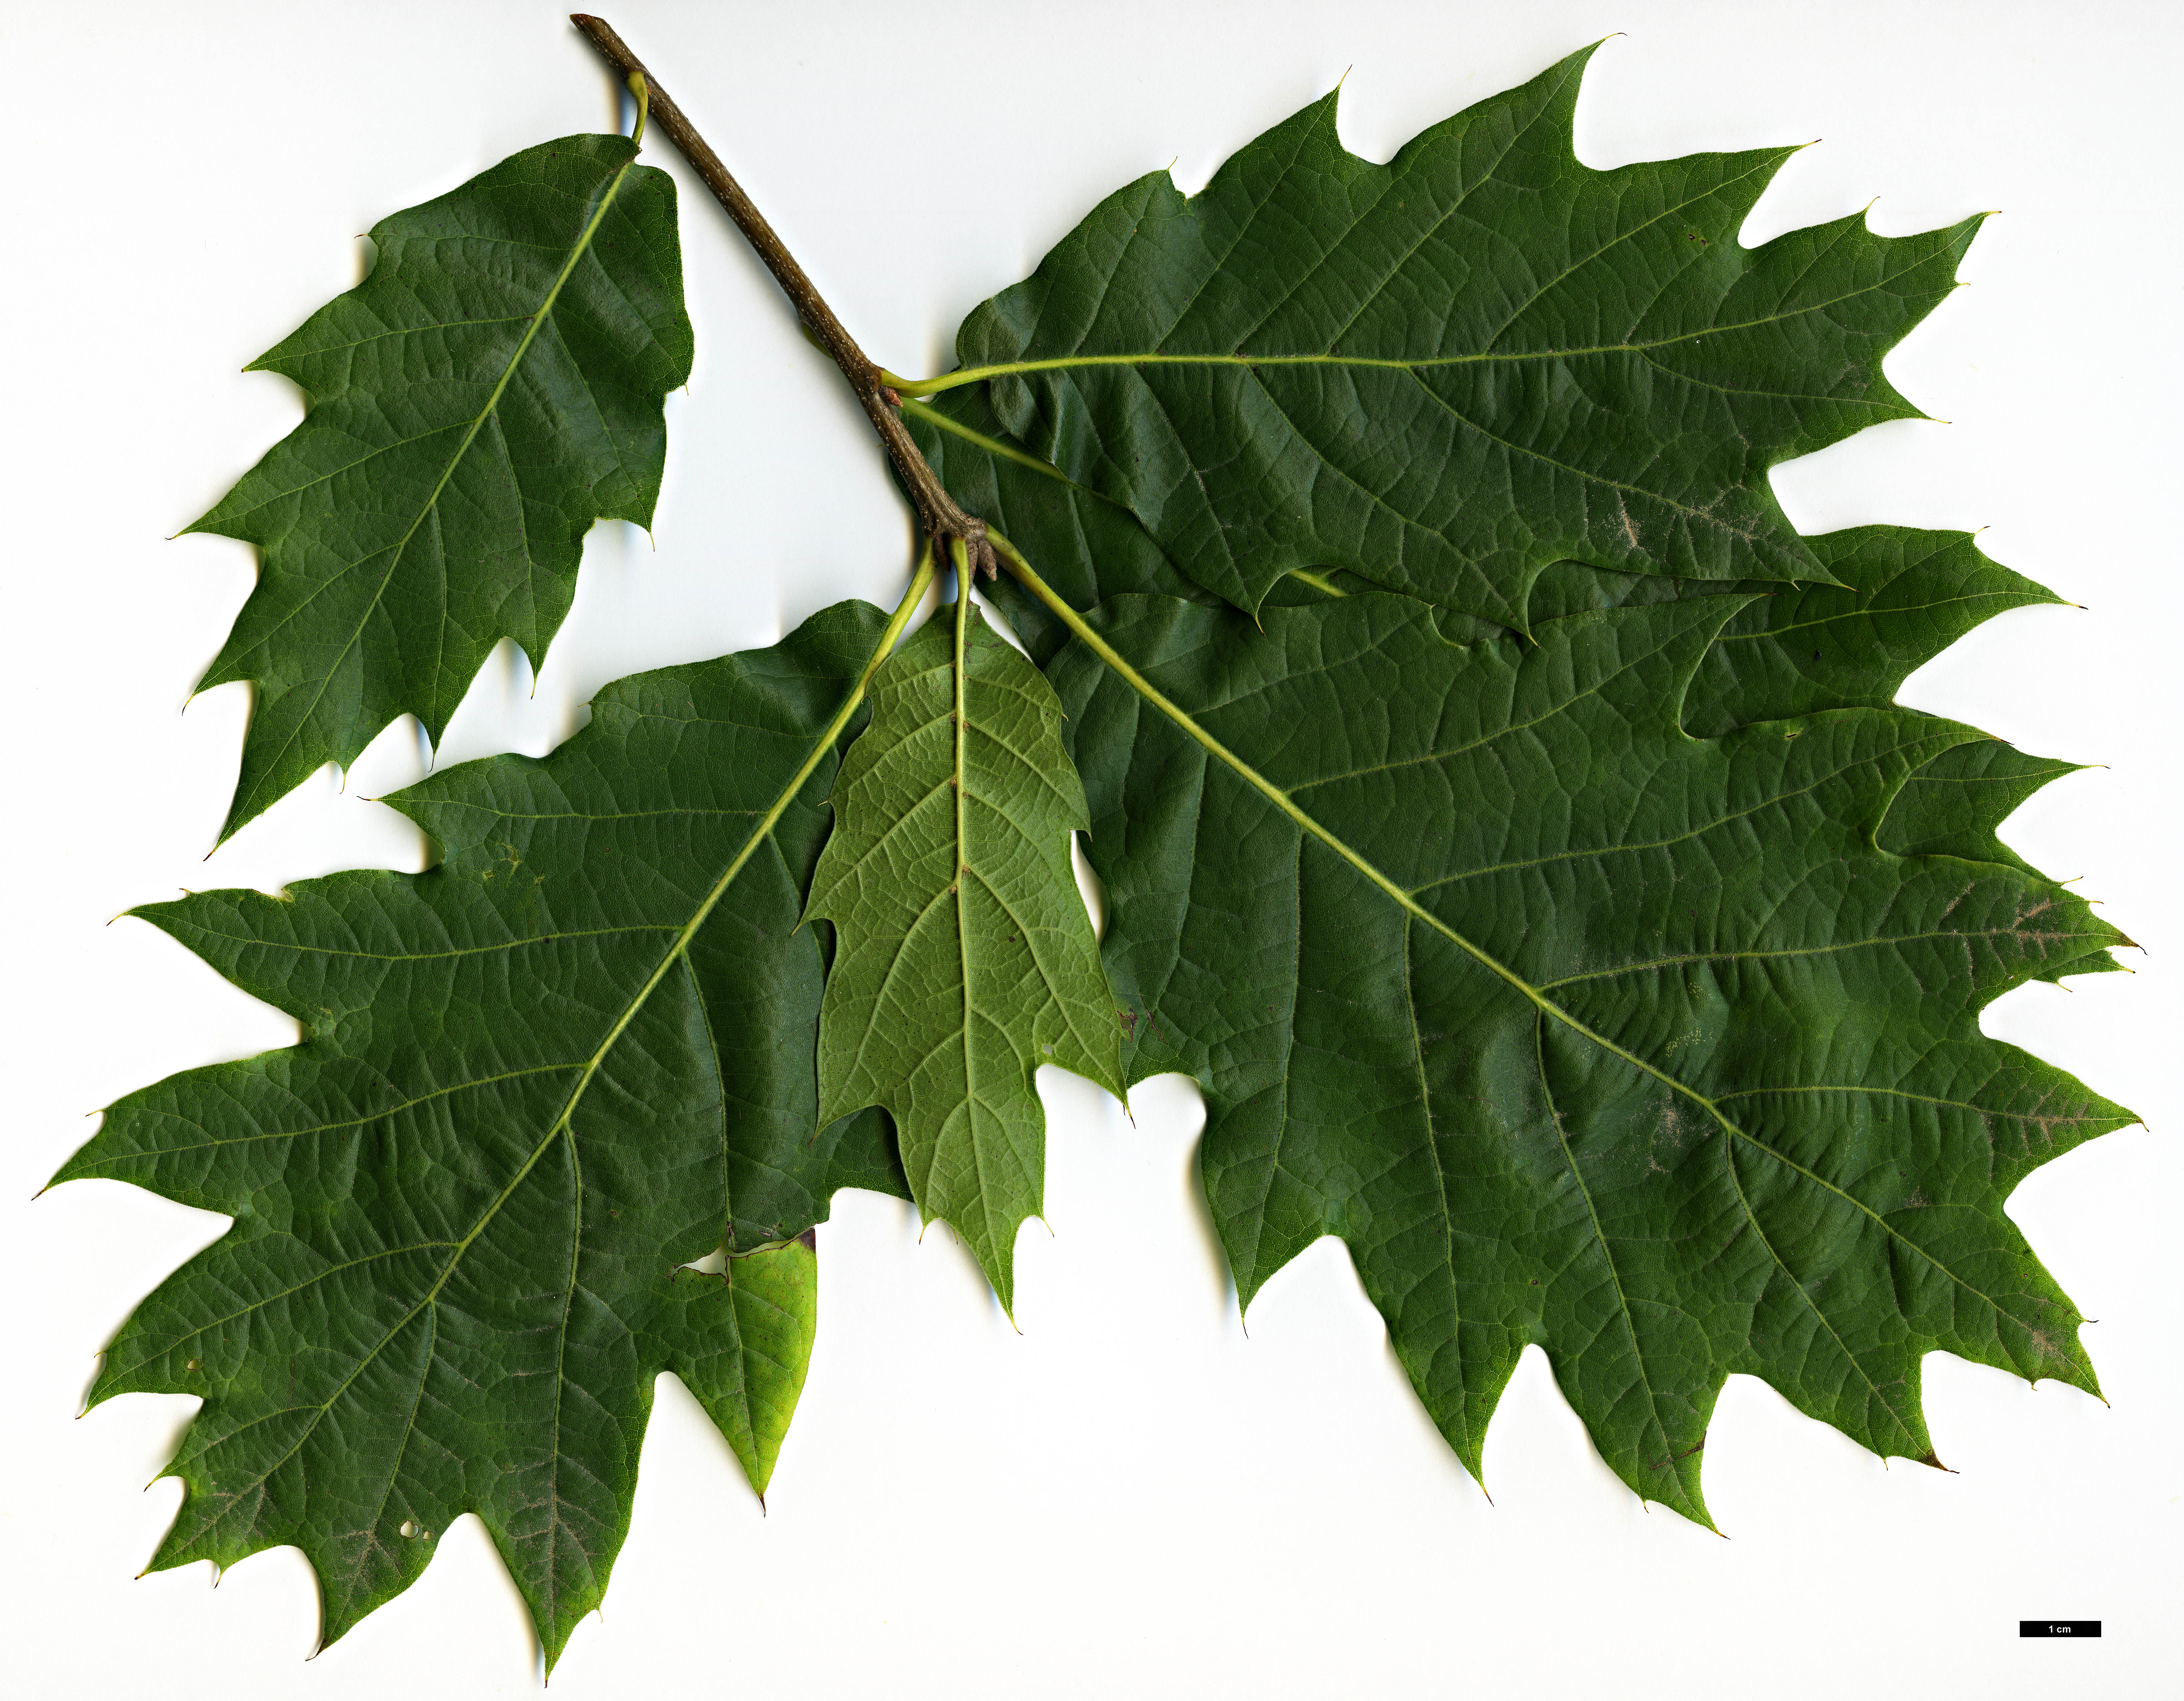 High resolution image: Family: Fagaceae - Genus: Quercus - Taxon: 'Chocha'